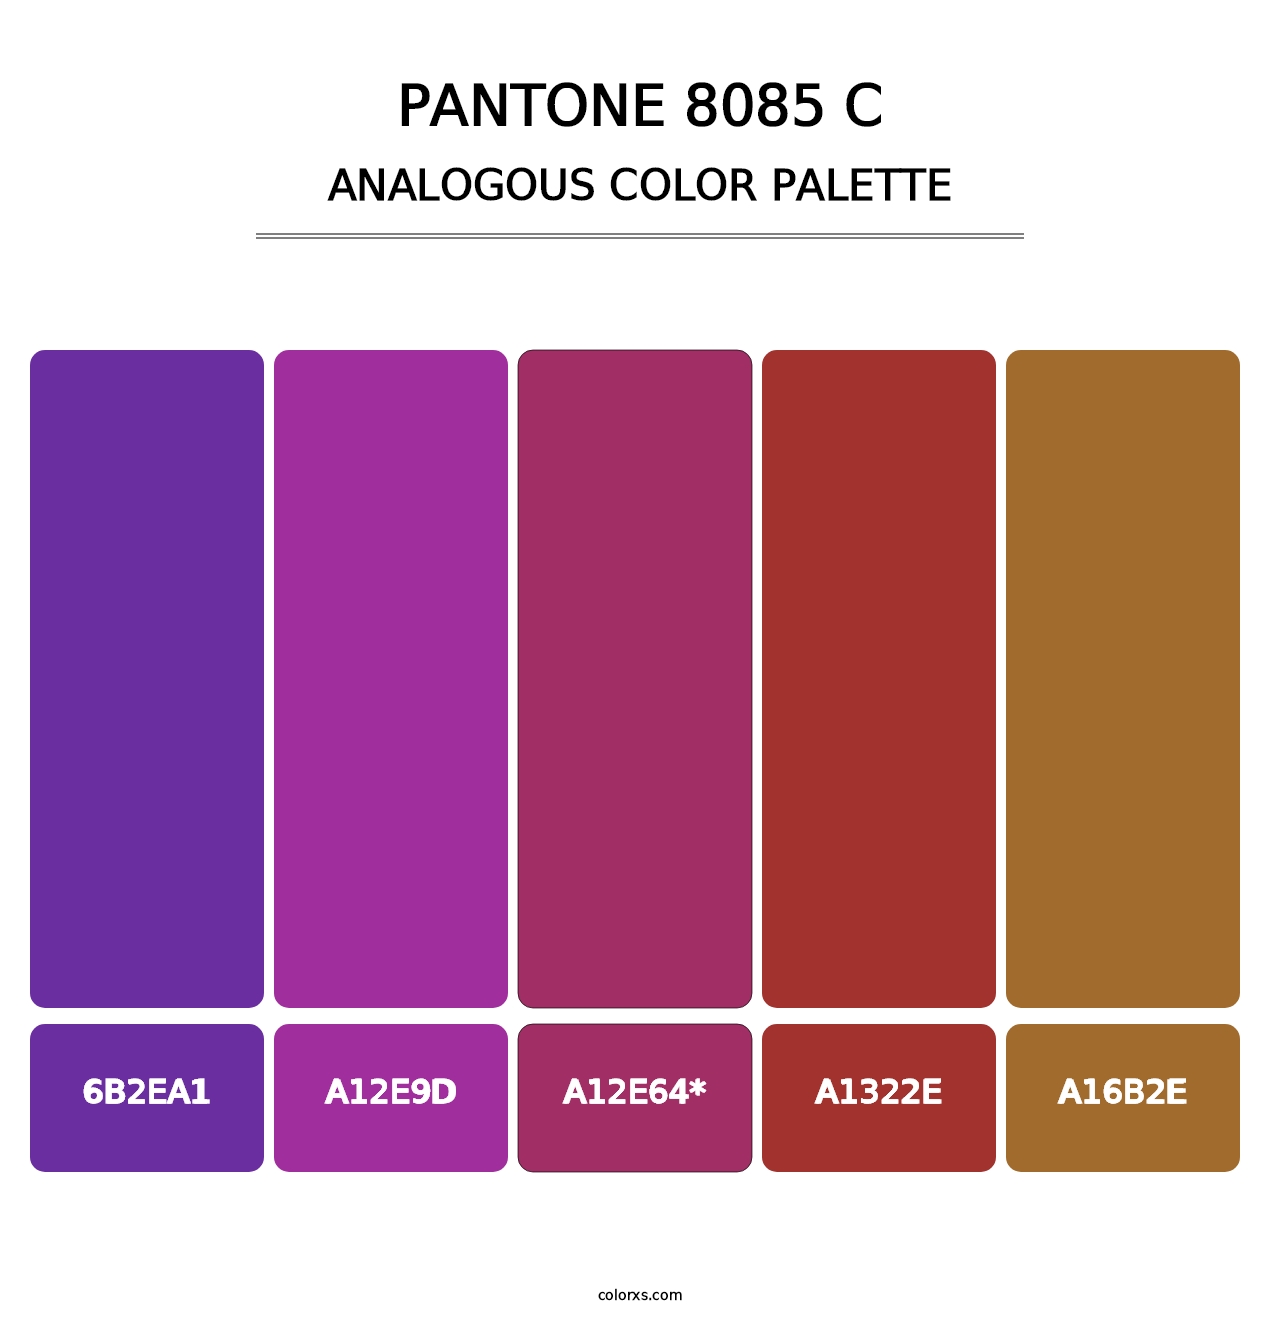 PANTONE 8085 C - Analogous Color Palette